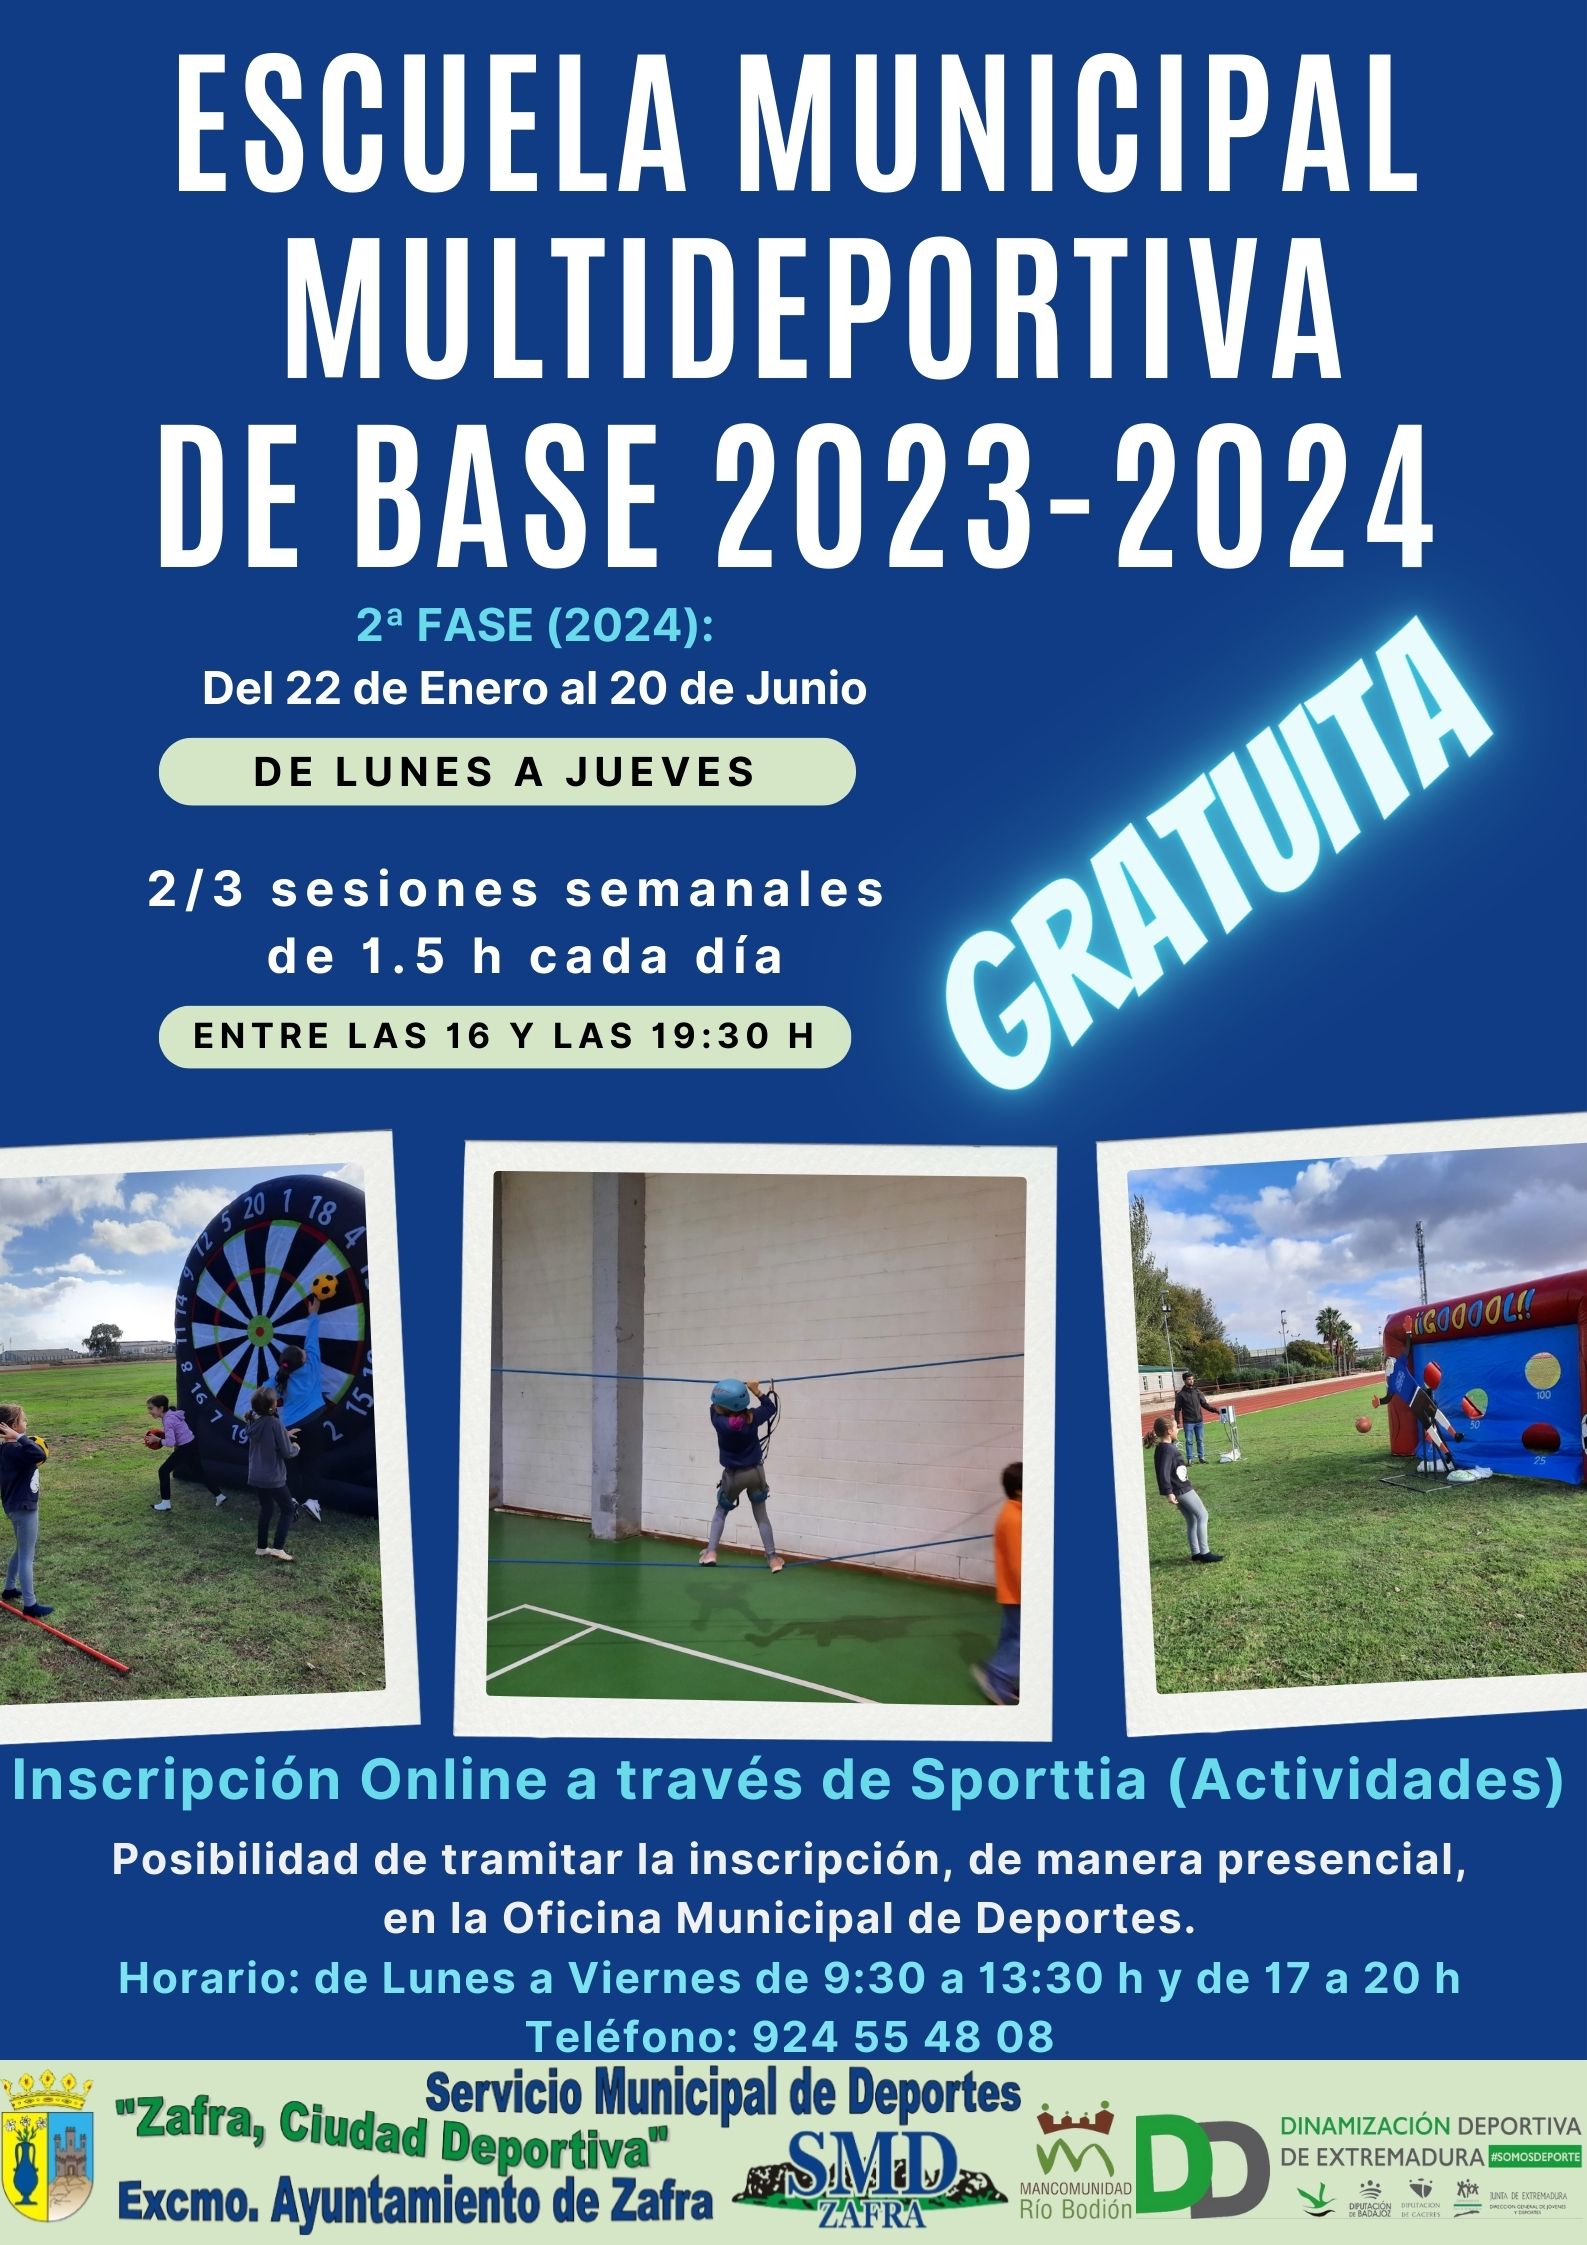 La segunda fase de la Escuela Municipal Multideportiva se desarrollará del 22 de enero al 20 de junio